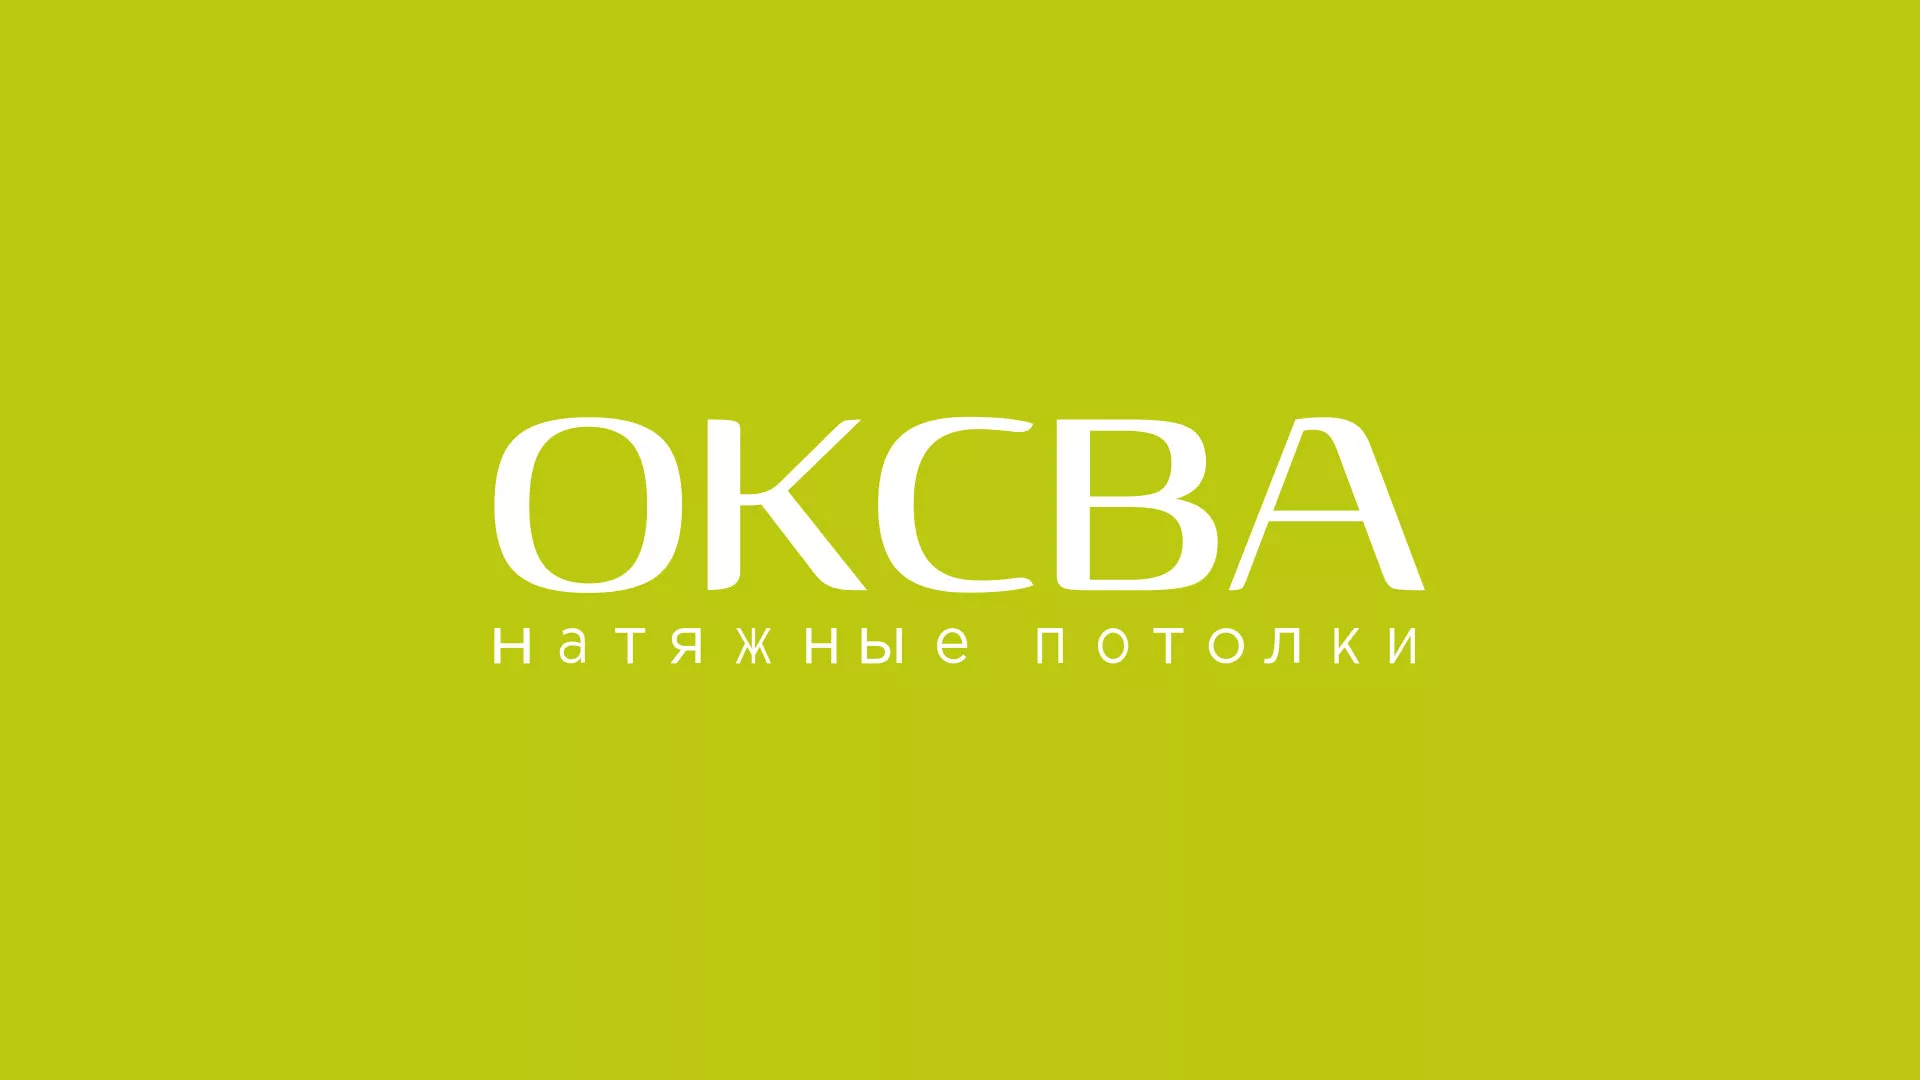 Создание сайта по продаже натяжных потолков для компании «ОКСВА» в Красавино